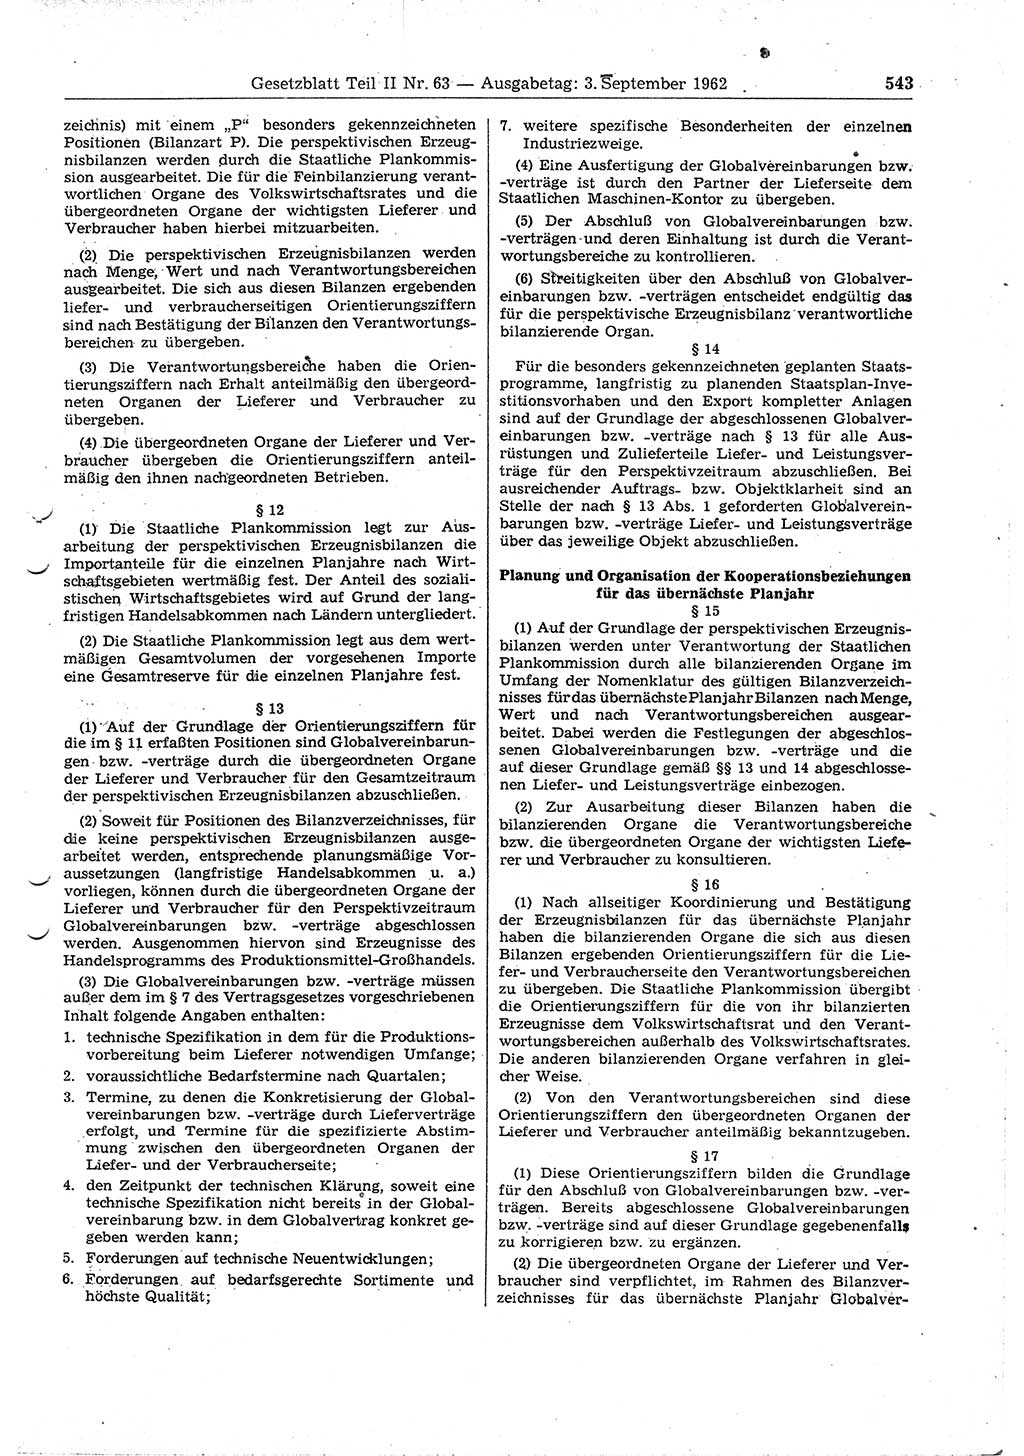 Gesetzblatt (GBl.) der Deutschen Demokratischen Republik (DDR) Teil ⅠⅠ 1962, Seite 543 (GBl. DDR ⅠⅠ 1962, S. 543)